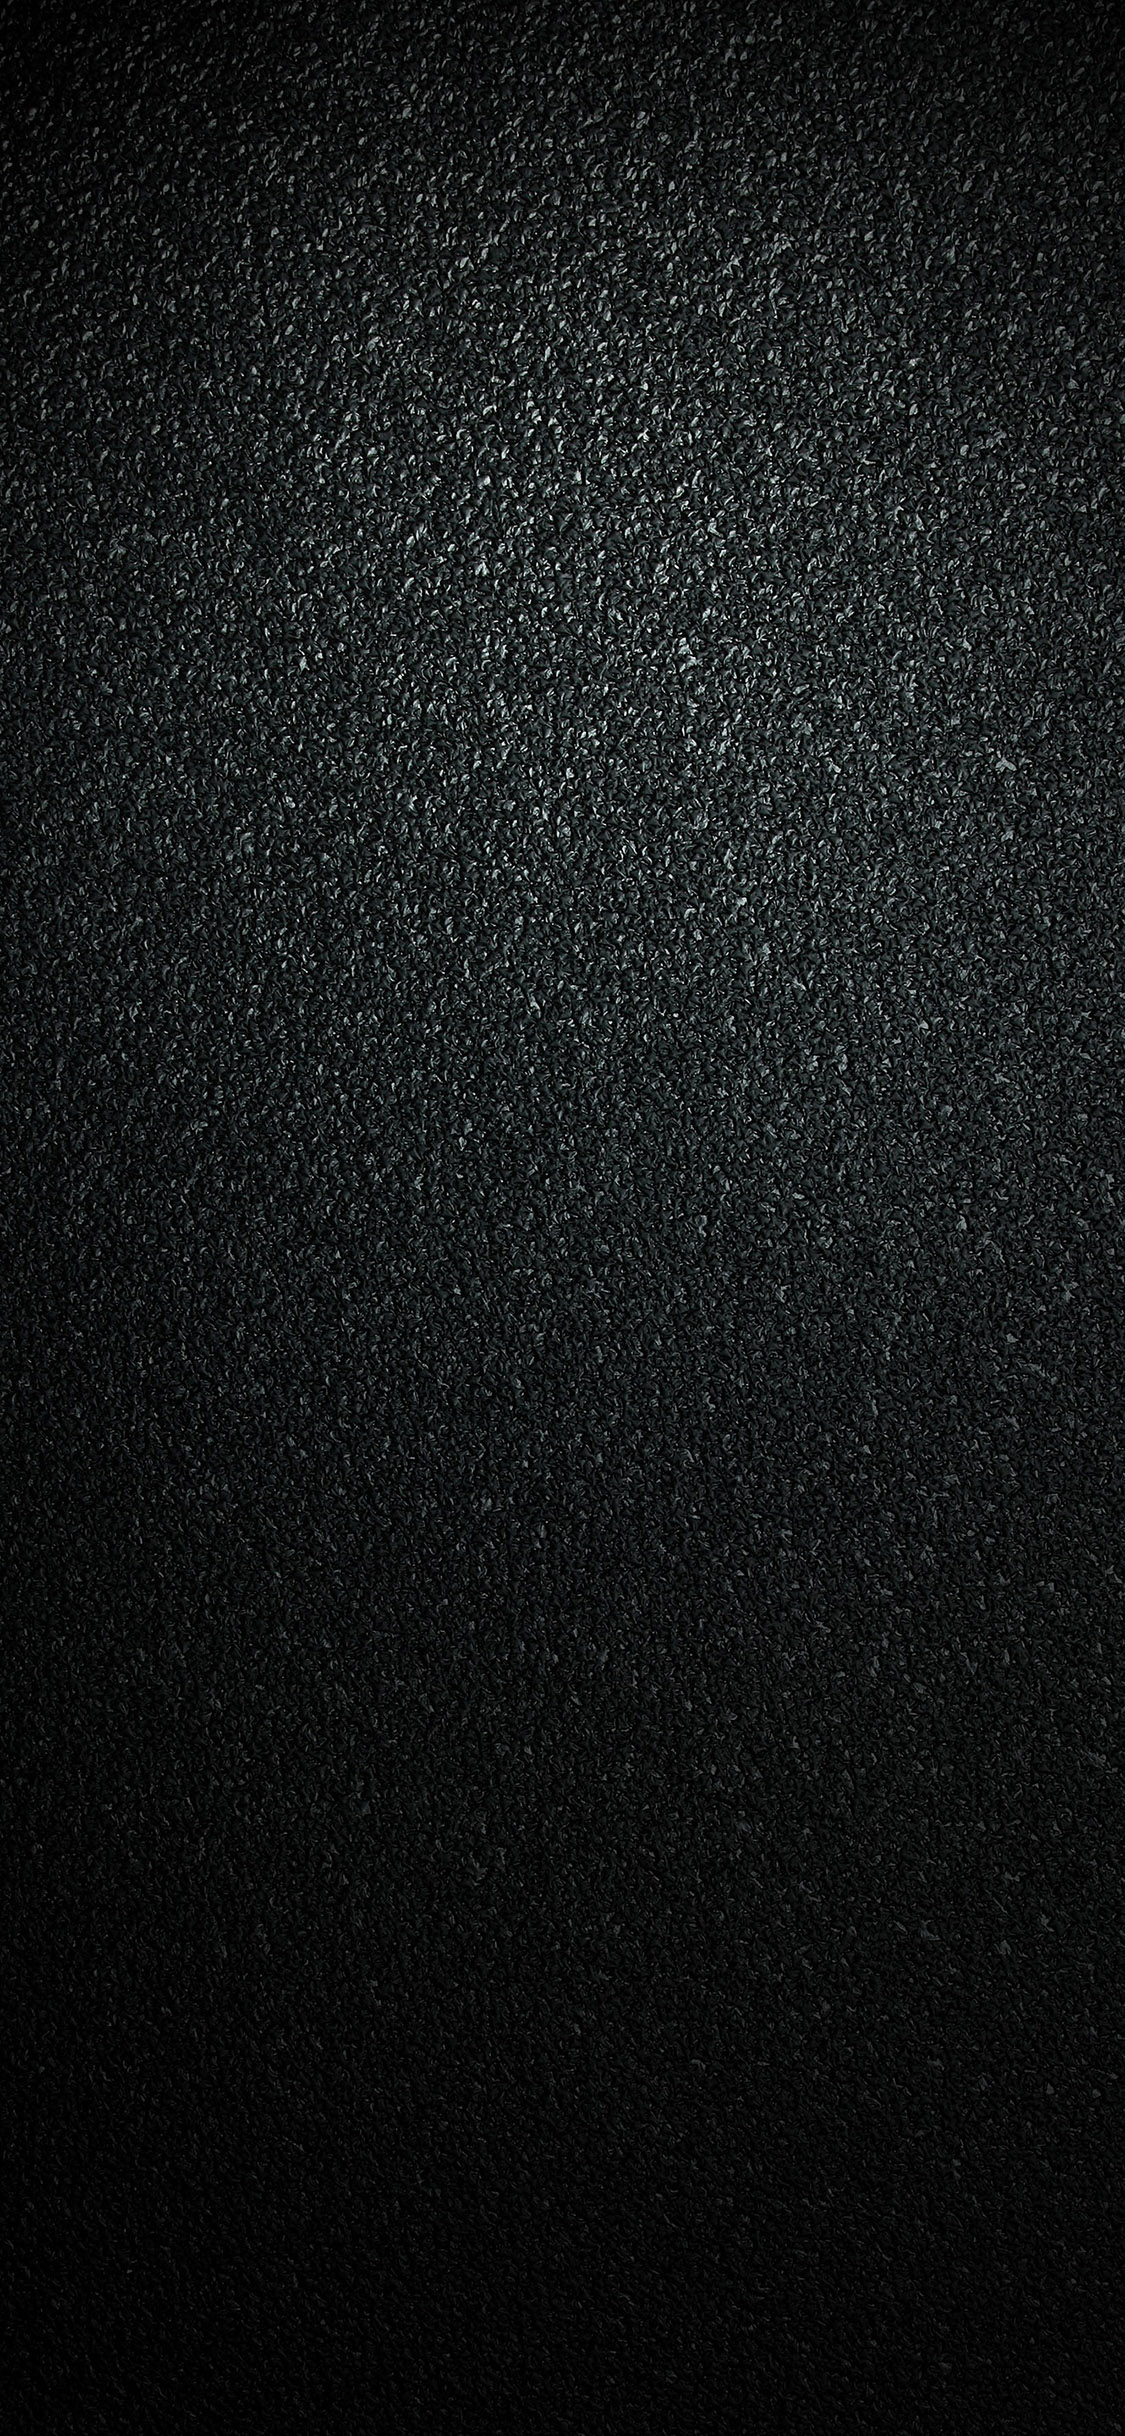 黑色背景 质感 简约 高级黑 苹果手机高清壁纸 1125x